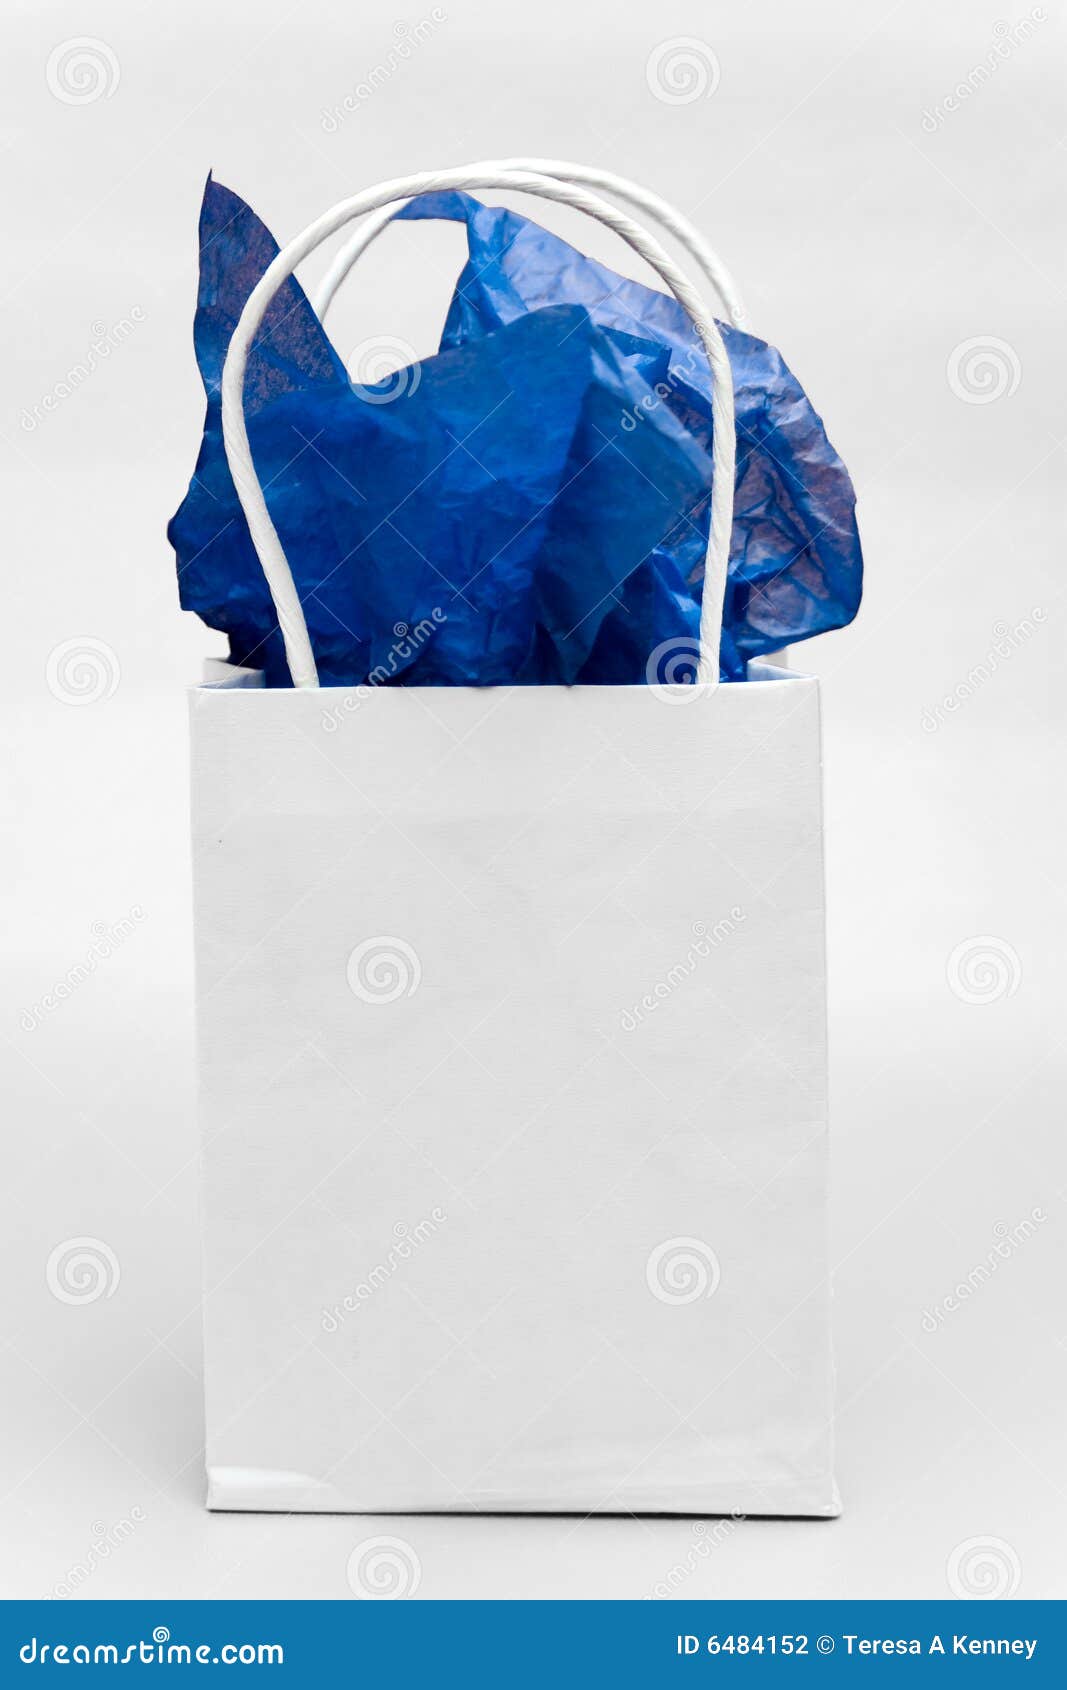 317 Bag Gift Paper Tissue White Stock Photos - Free & Royalty-Free